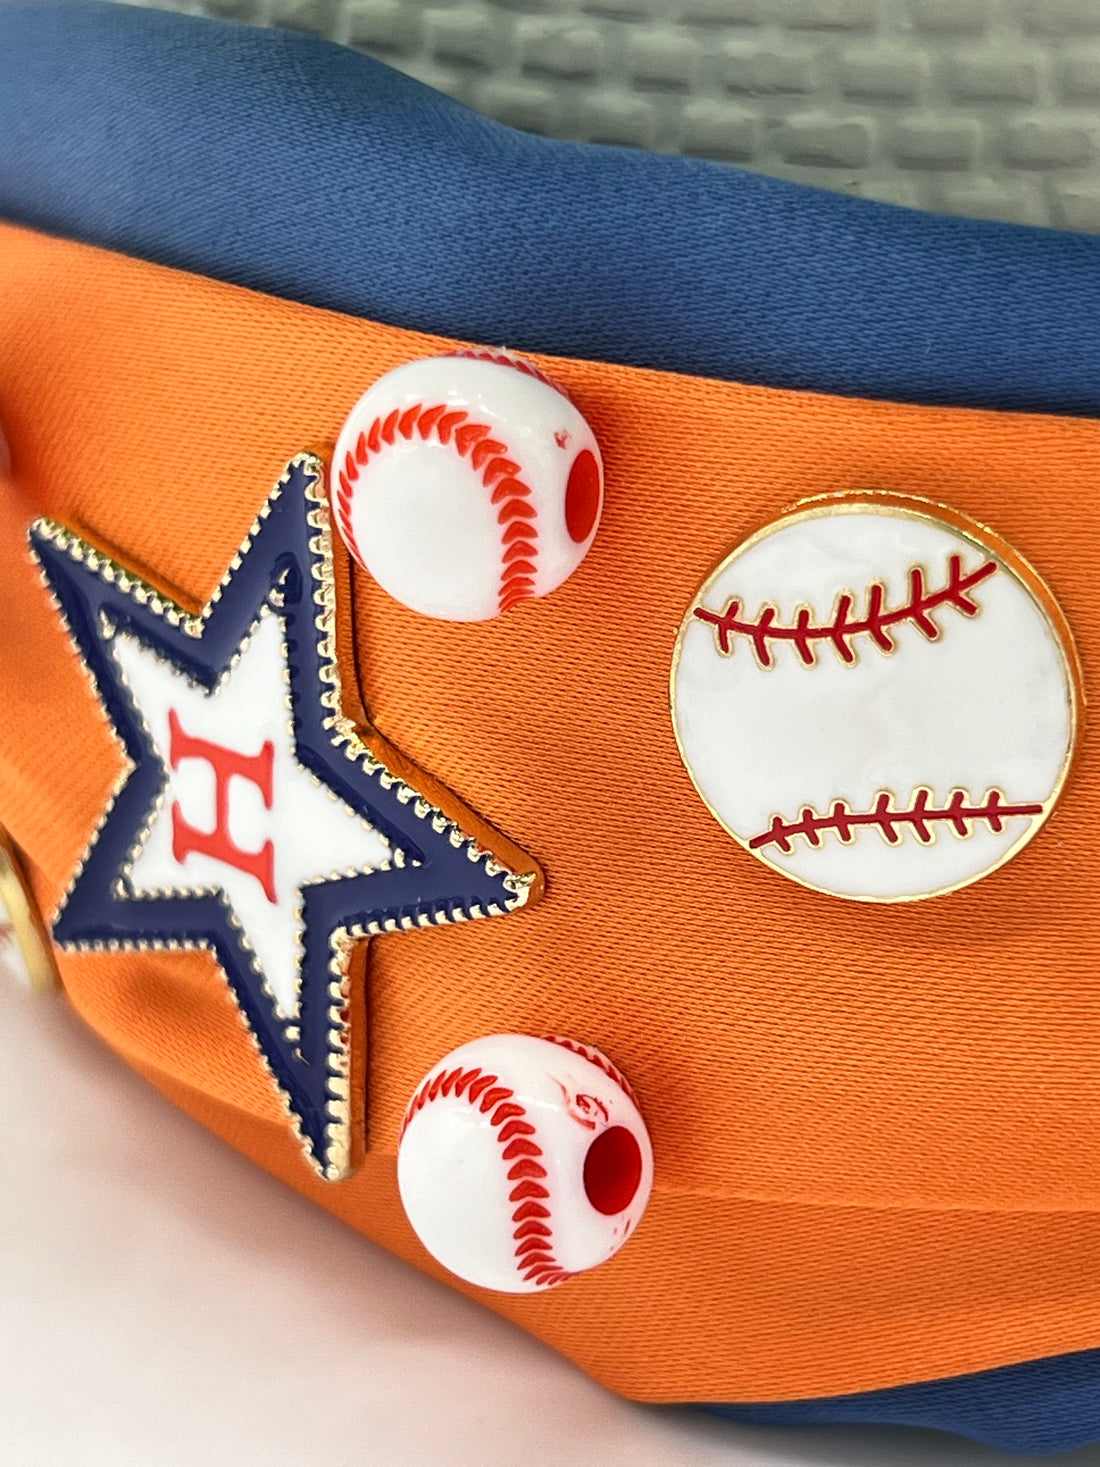 Baseball Astros Headbands